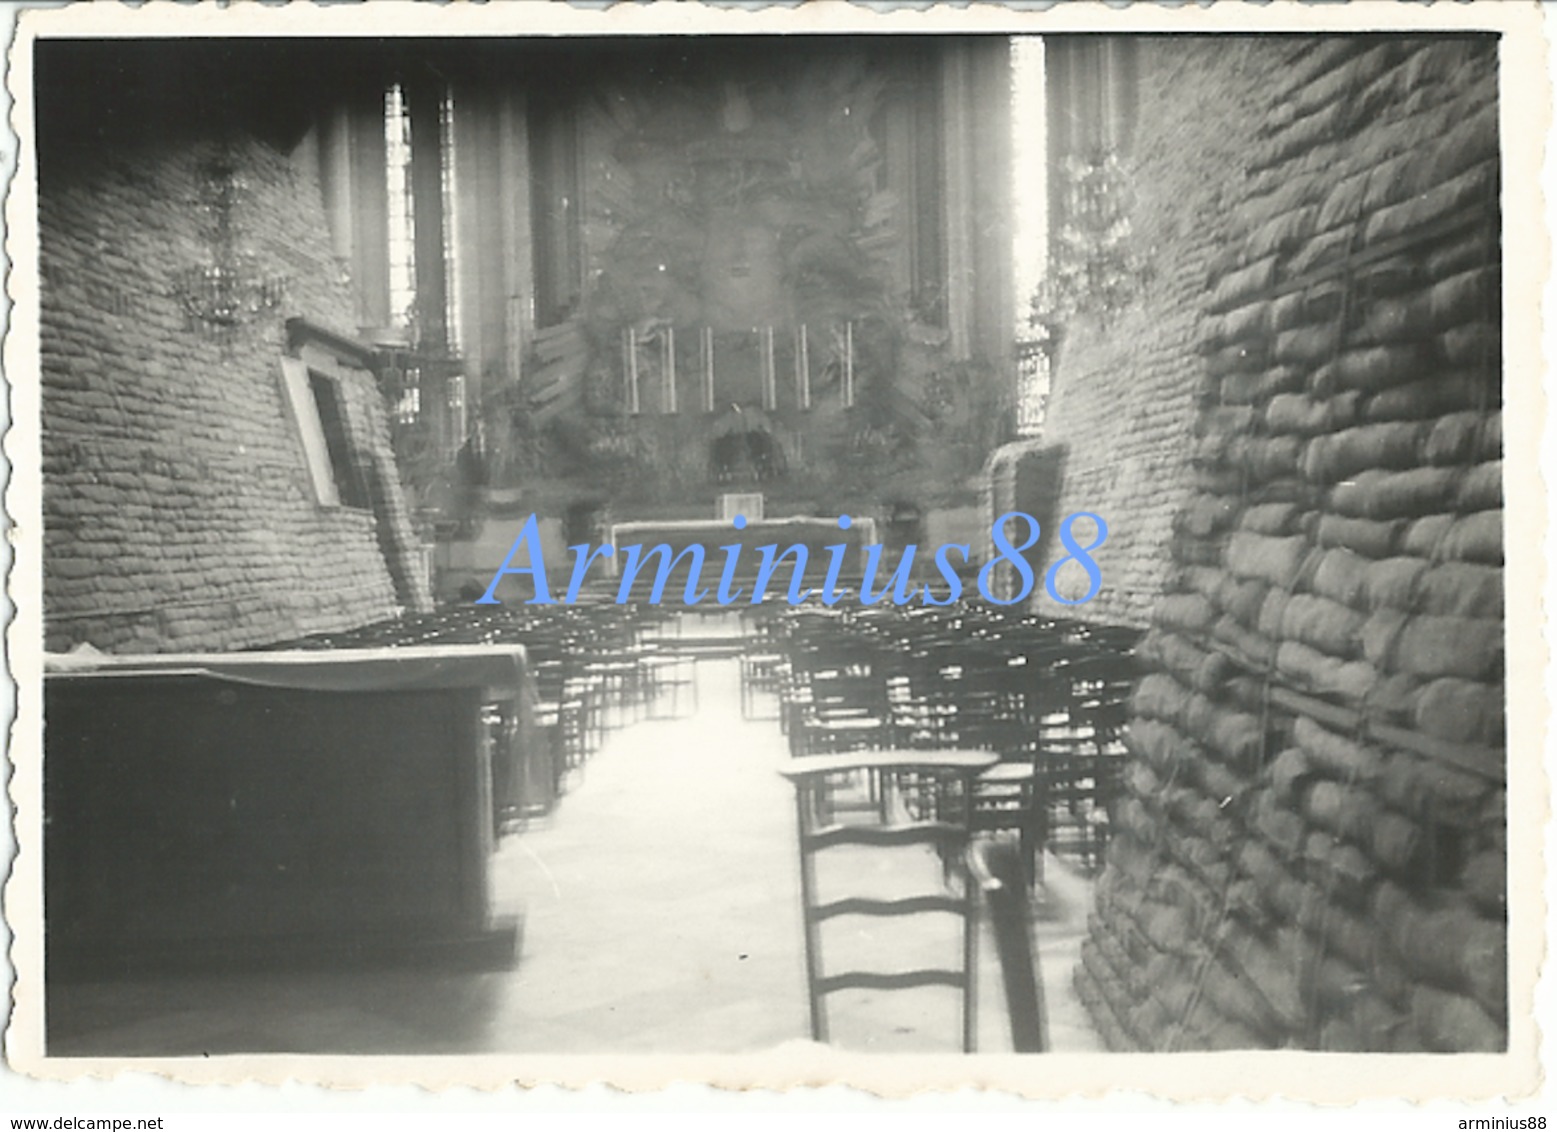 Campagne De France 1940 - In Amiens - L'intérieur De La Cathédrale Notre-Dame Avec Ses Protections De Sacs De Sable - Guerre, Militaire